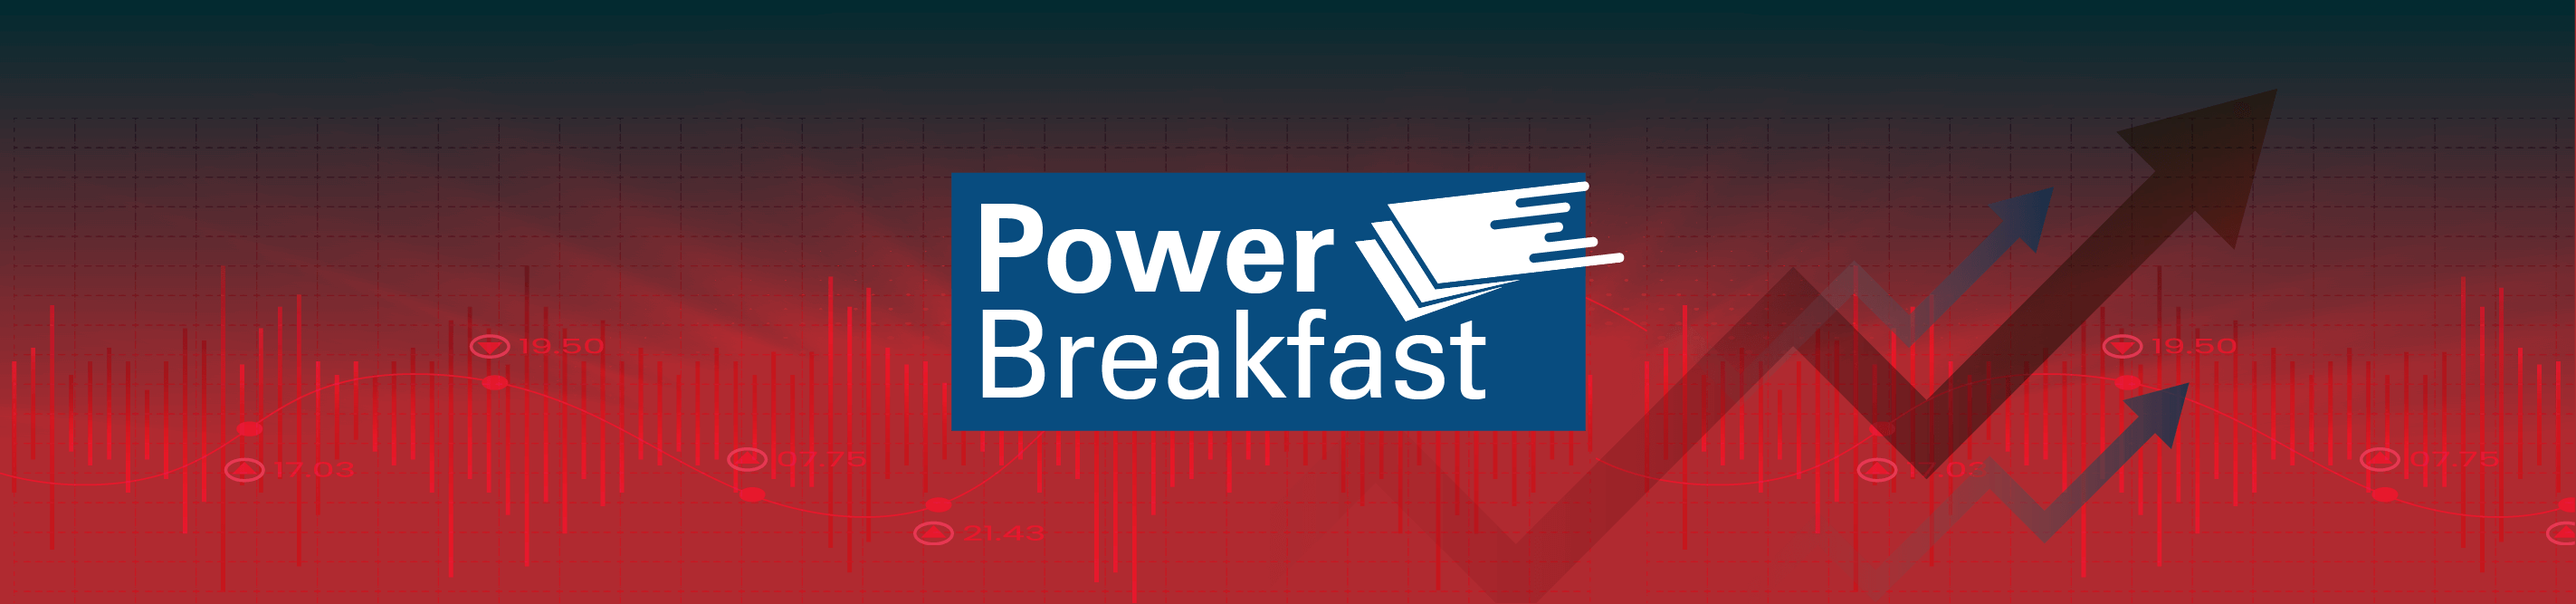 Power Breakfast 